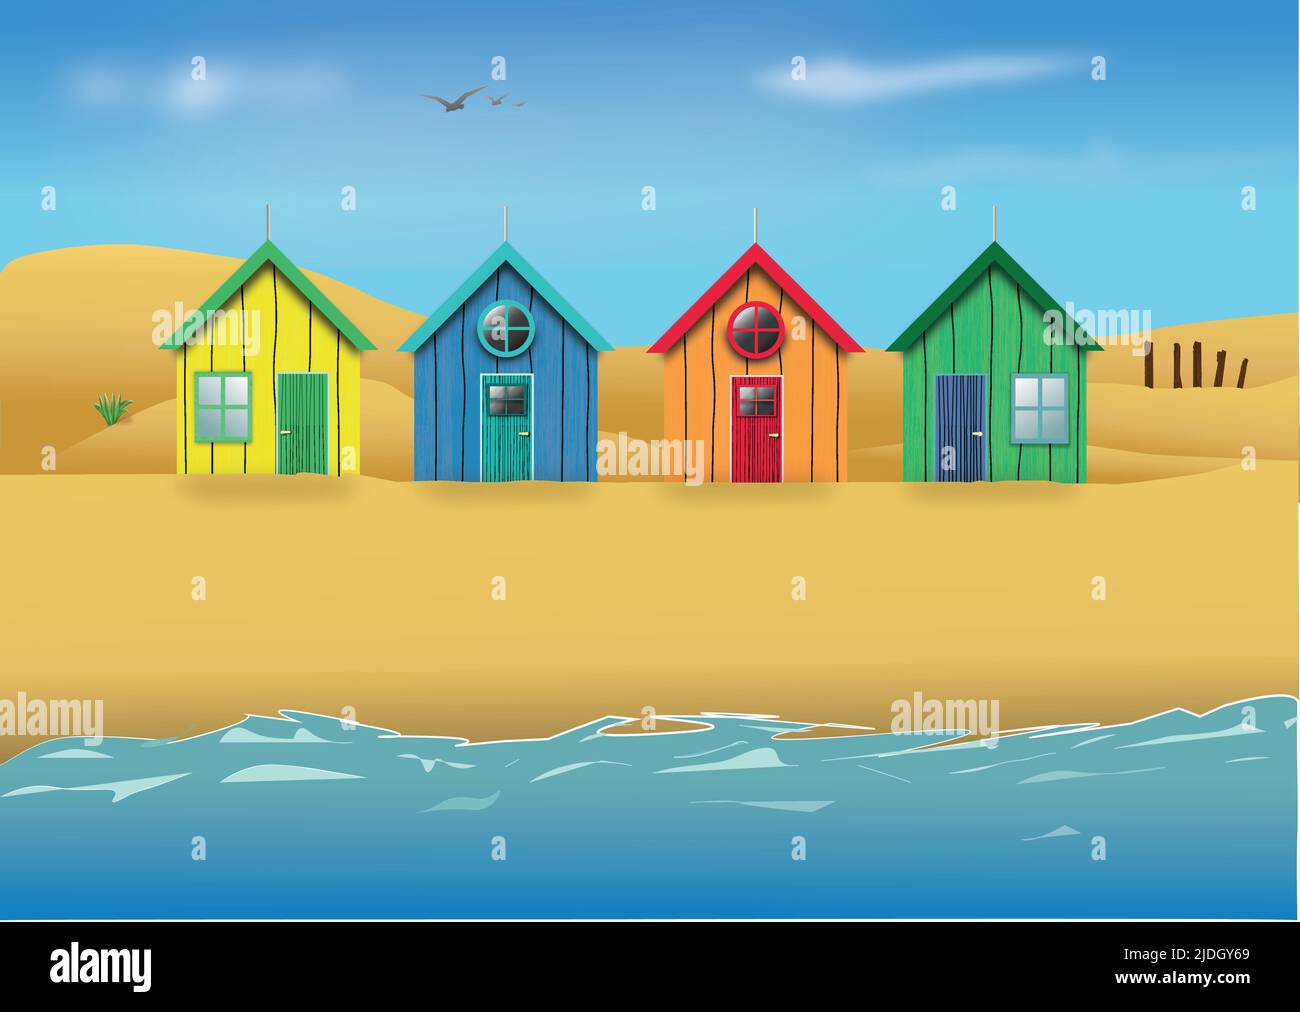 Des cabanes de plage sur une plage de sable avec des dunes de sable en arrière-plan, et des oiseaux qui volent au-dessus de la tête Illustration de Vecteur